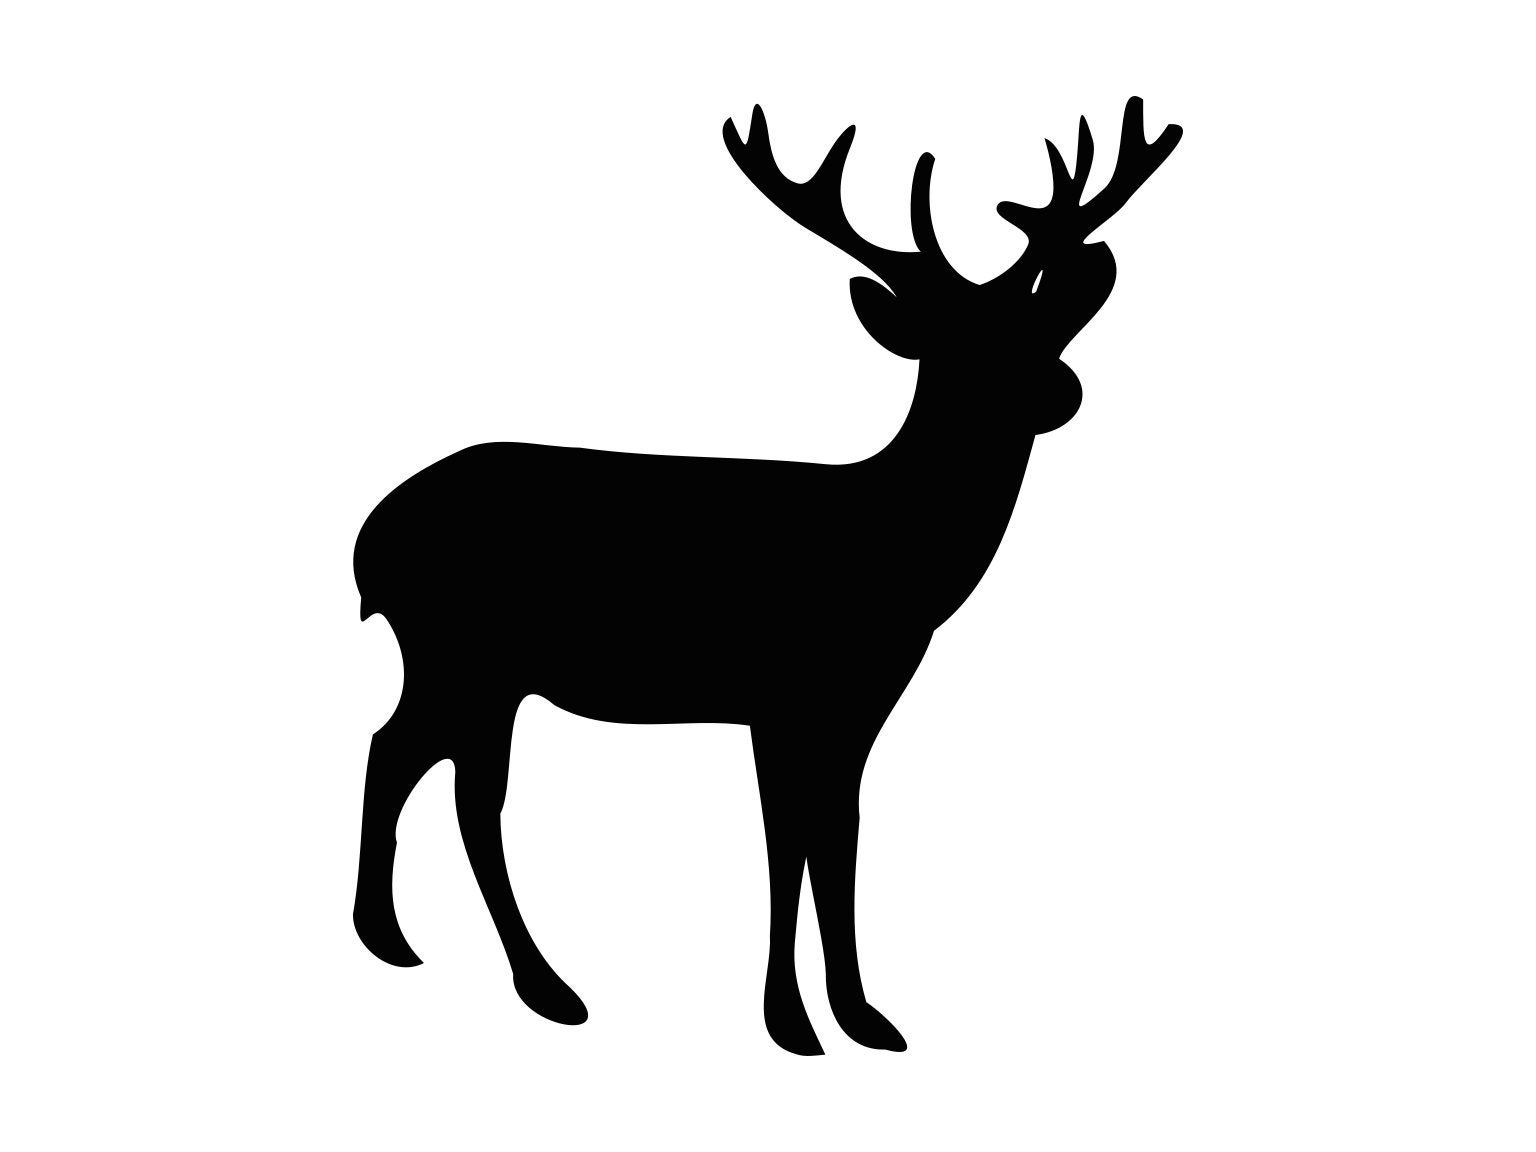 Download Free Deer Svg Images : Deer Skull Svg Hunting and Fishing ...